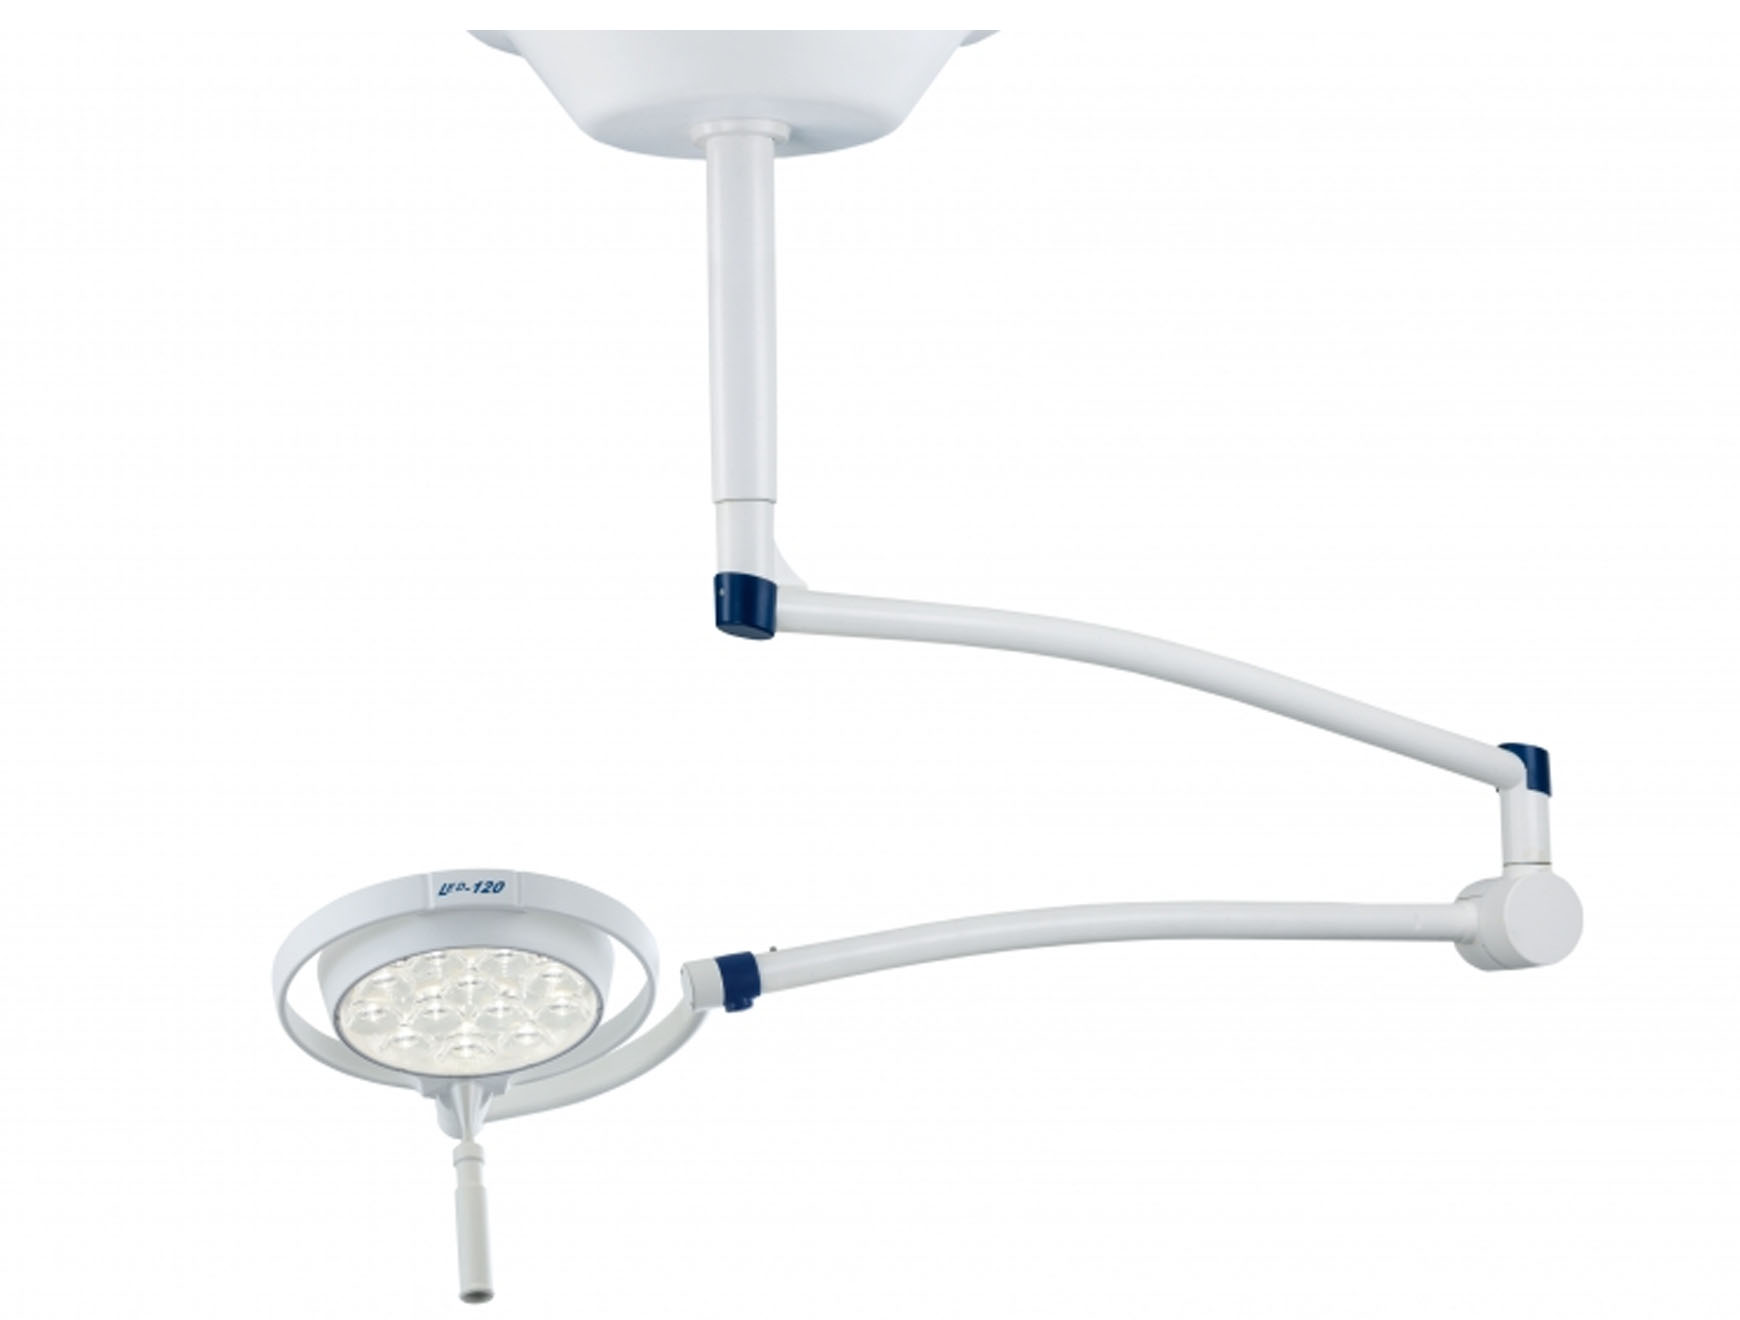 Lampe d'examen LED 120 - fixation au plafond - bras à ressort - anneau d'ancrage exclusif - 1 pc